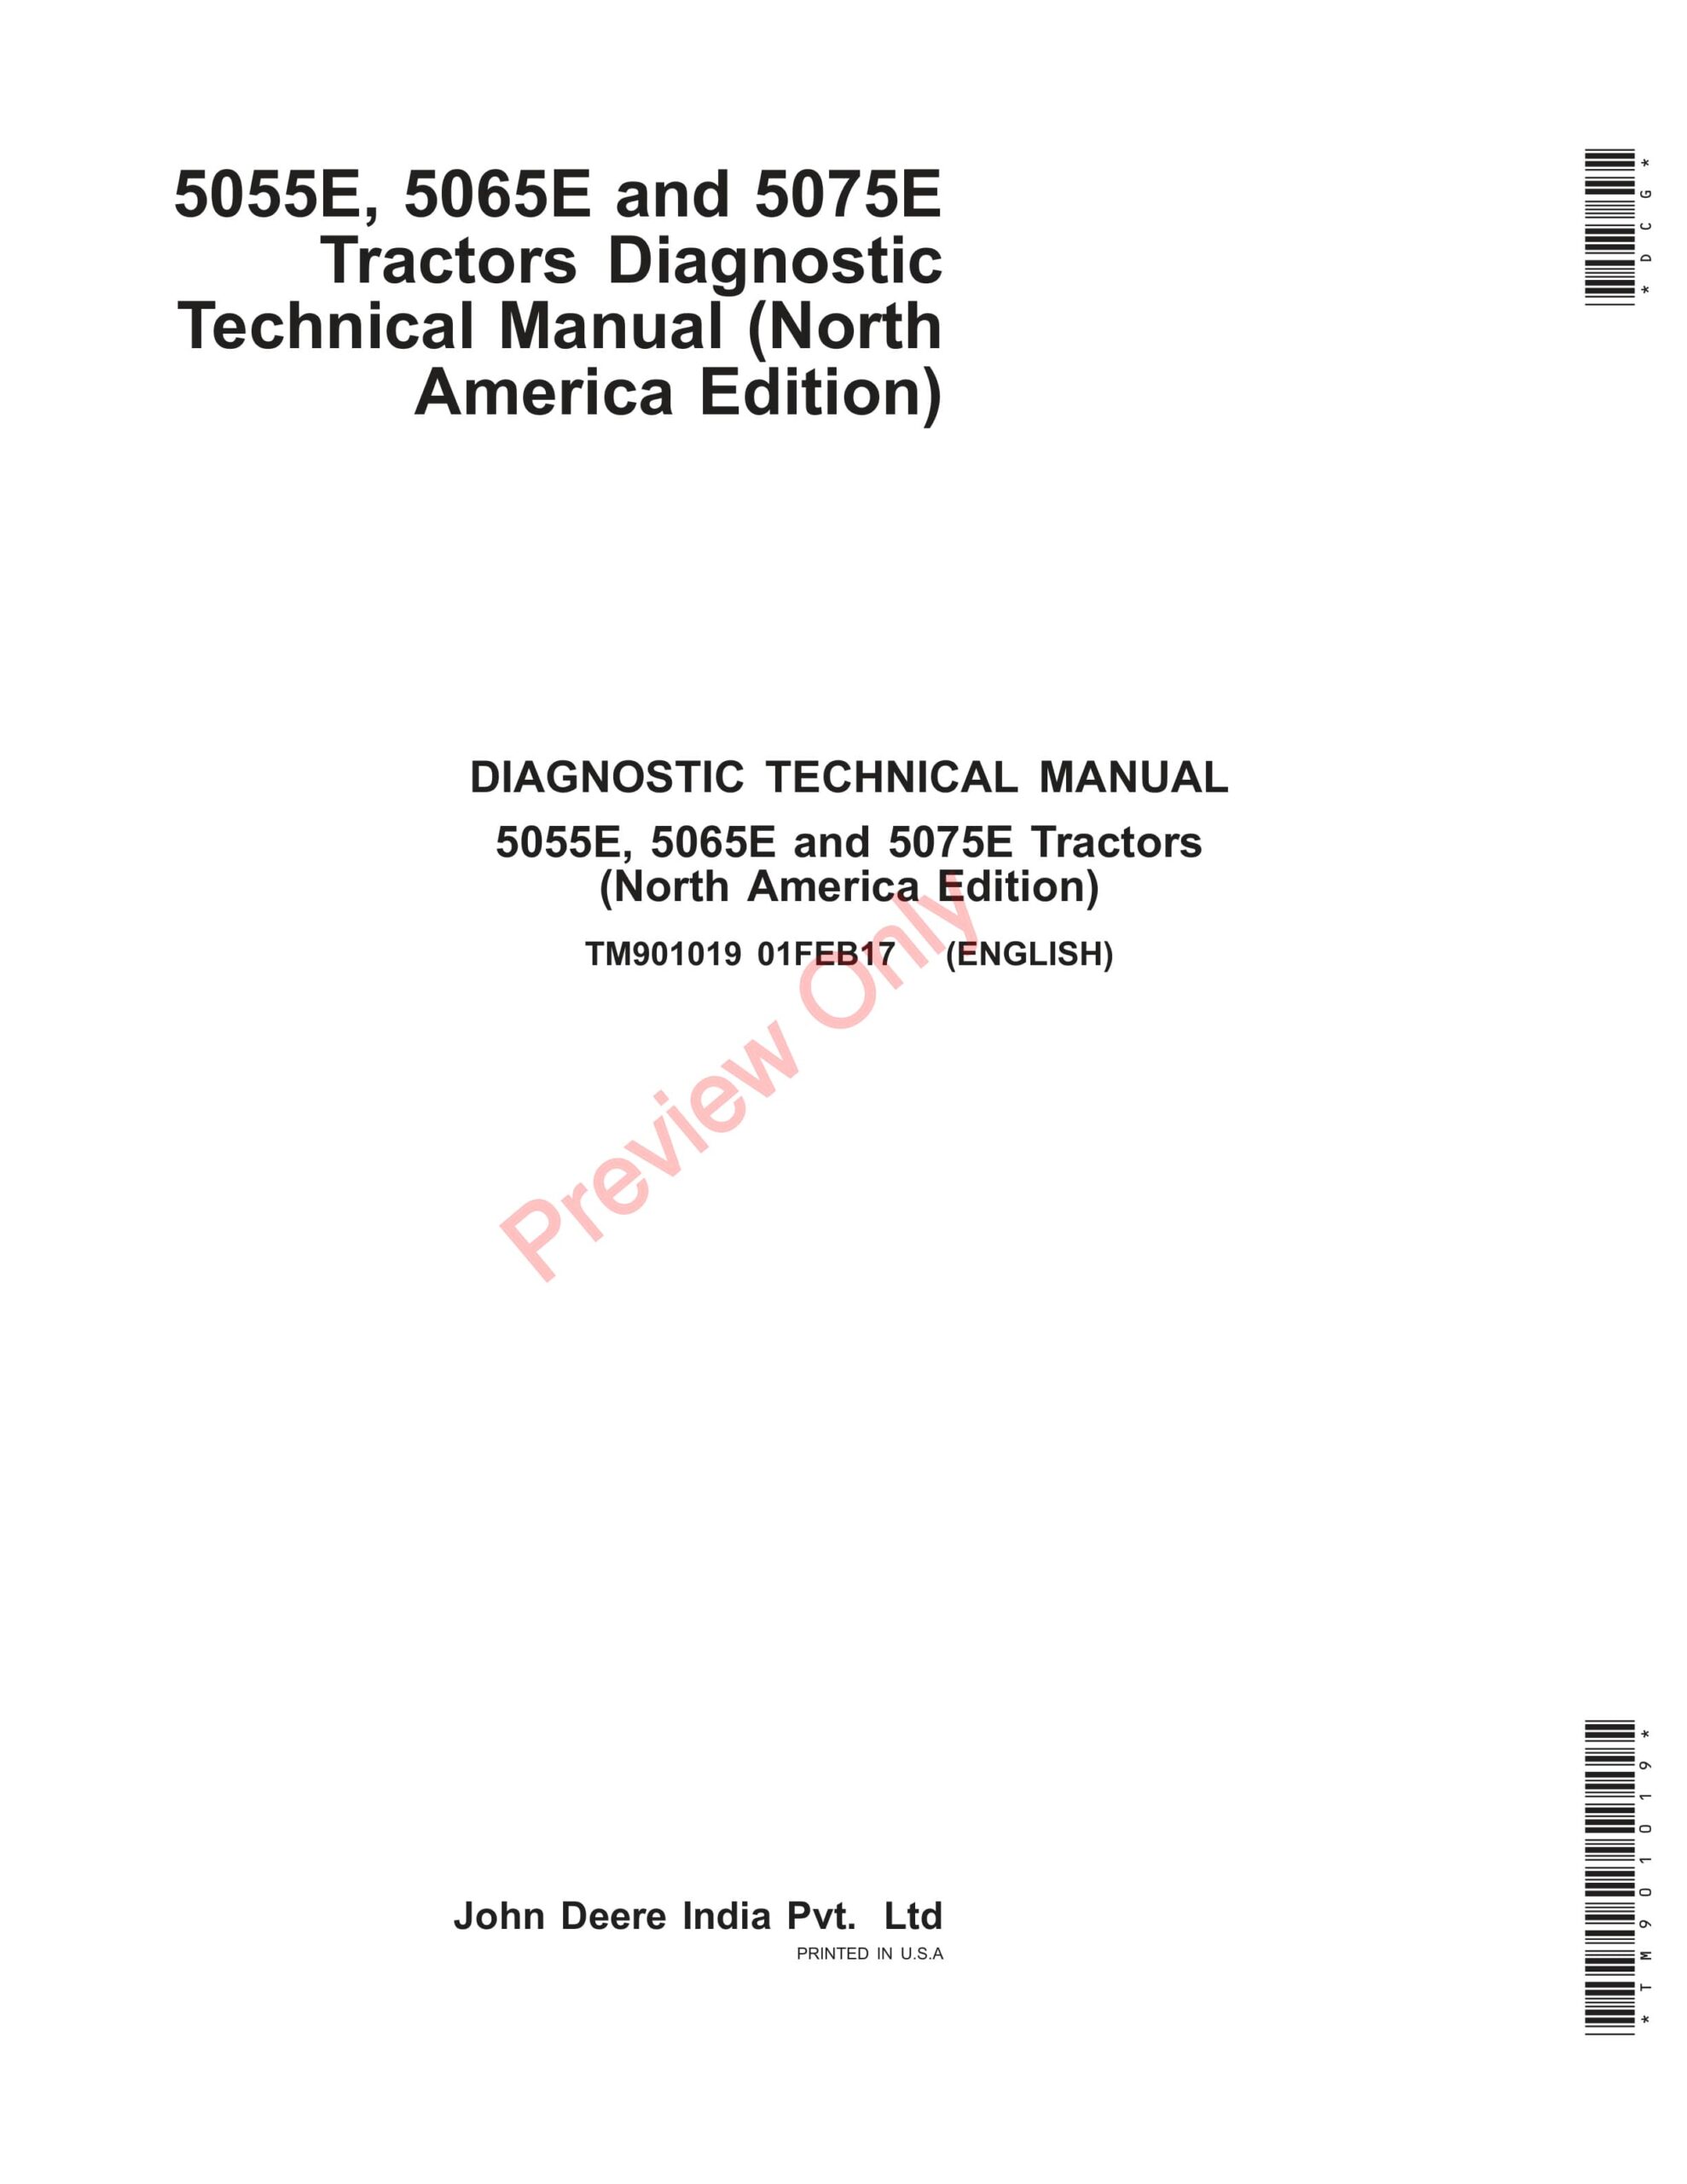 John Deere 5055E, 5065E and 5075E Tractors Diagnostic Technical Manual TM901019 22MAR22-1